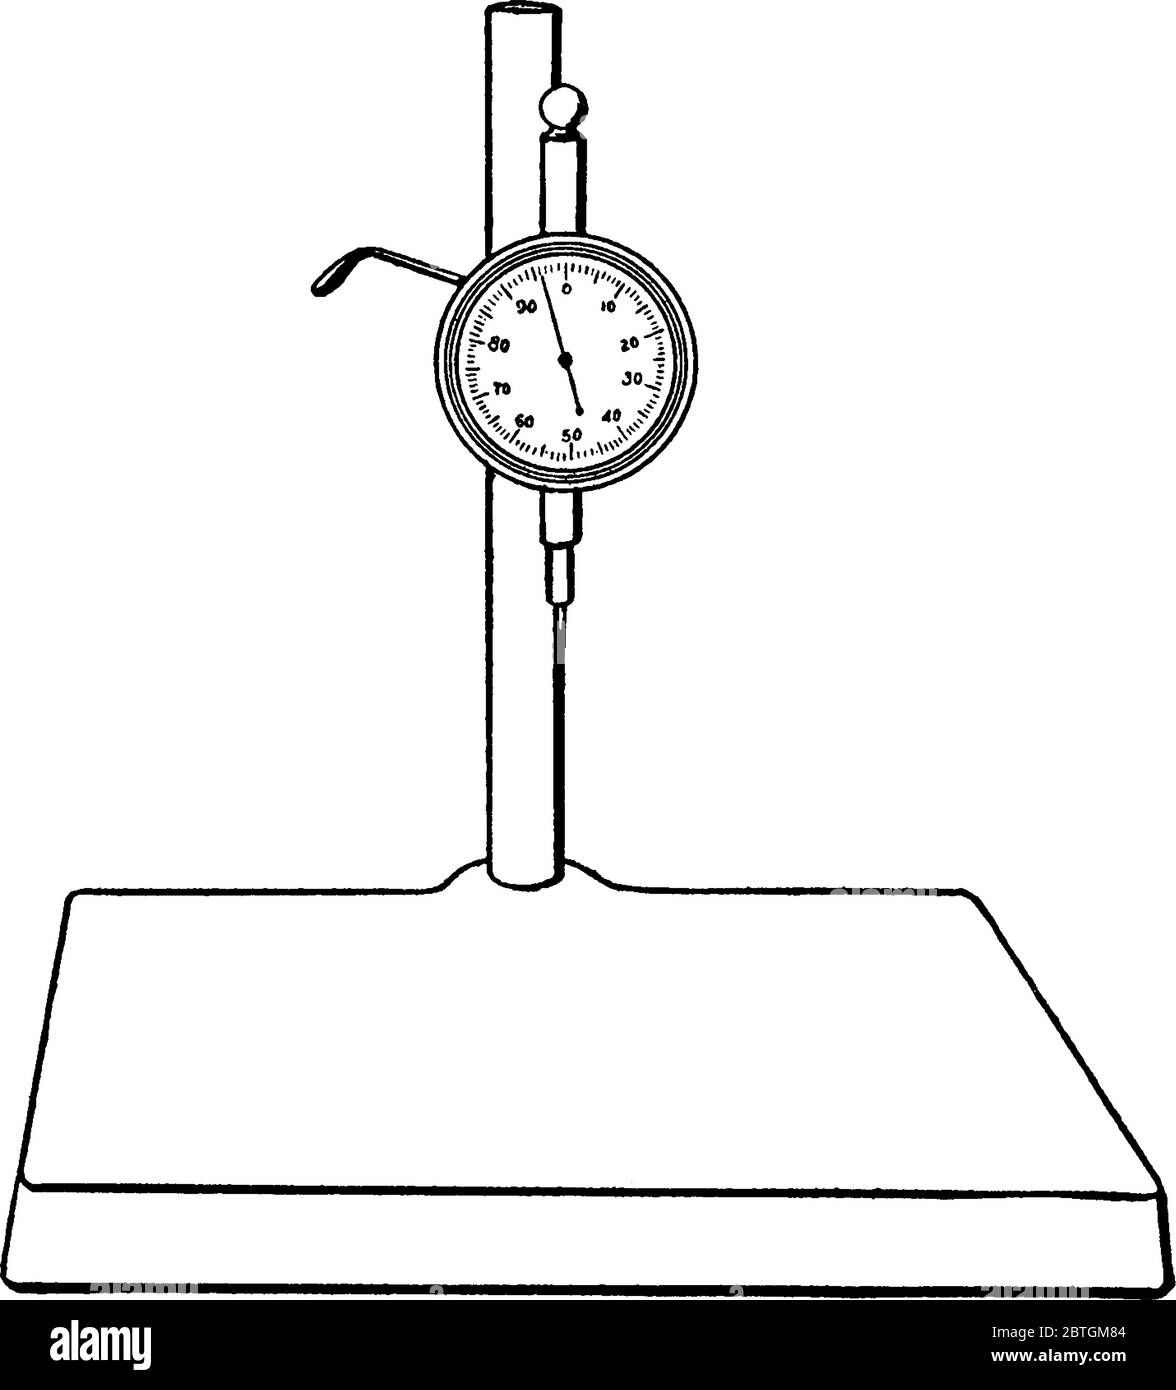 Una rappresentazione tipica di un indicatore di test che consiste in un quadrante montato su un supporto. Comparatore a quadrante per il controllo dell'altezza degli oggetti, vinta Illustrazione Vettoriale